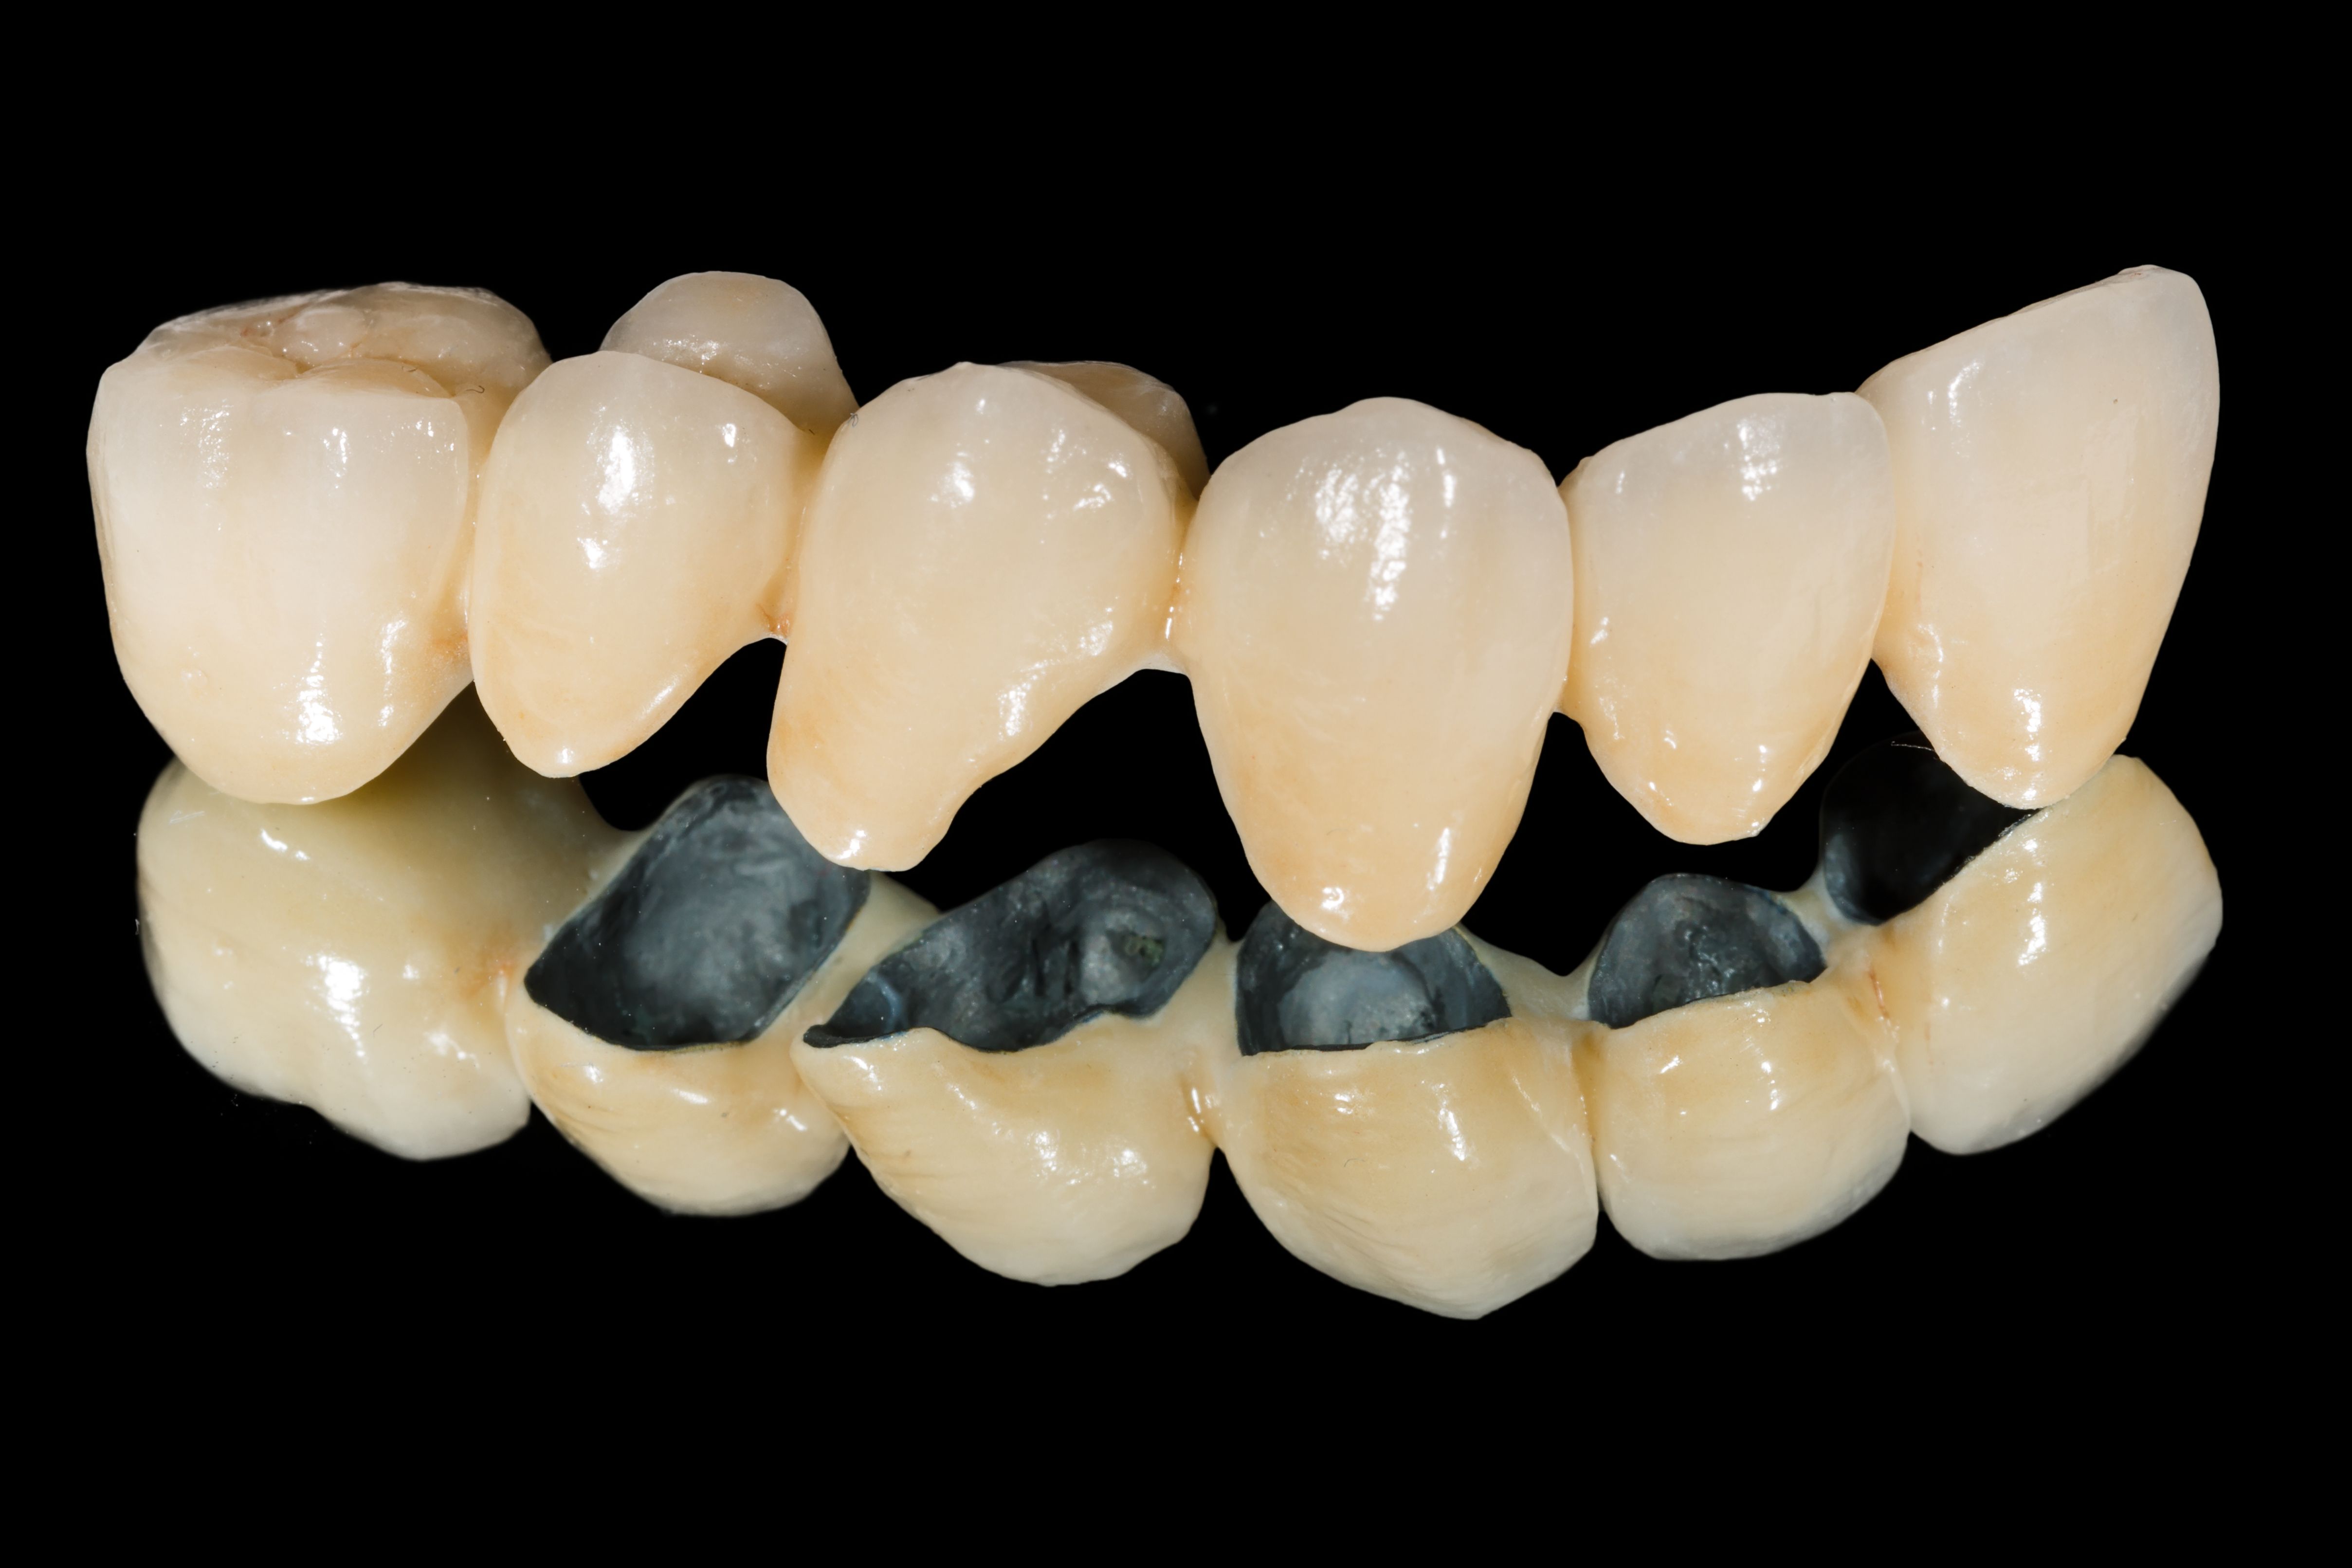 缺几颗牙才能做吸附性义齿?有人说BPS吸附性义齿要拔光牙齿,牙齿修复-8682赴韩整形网